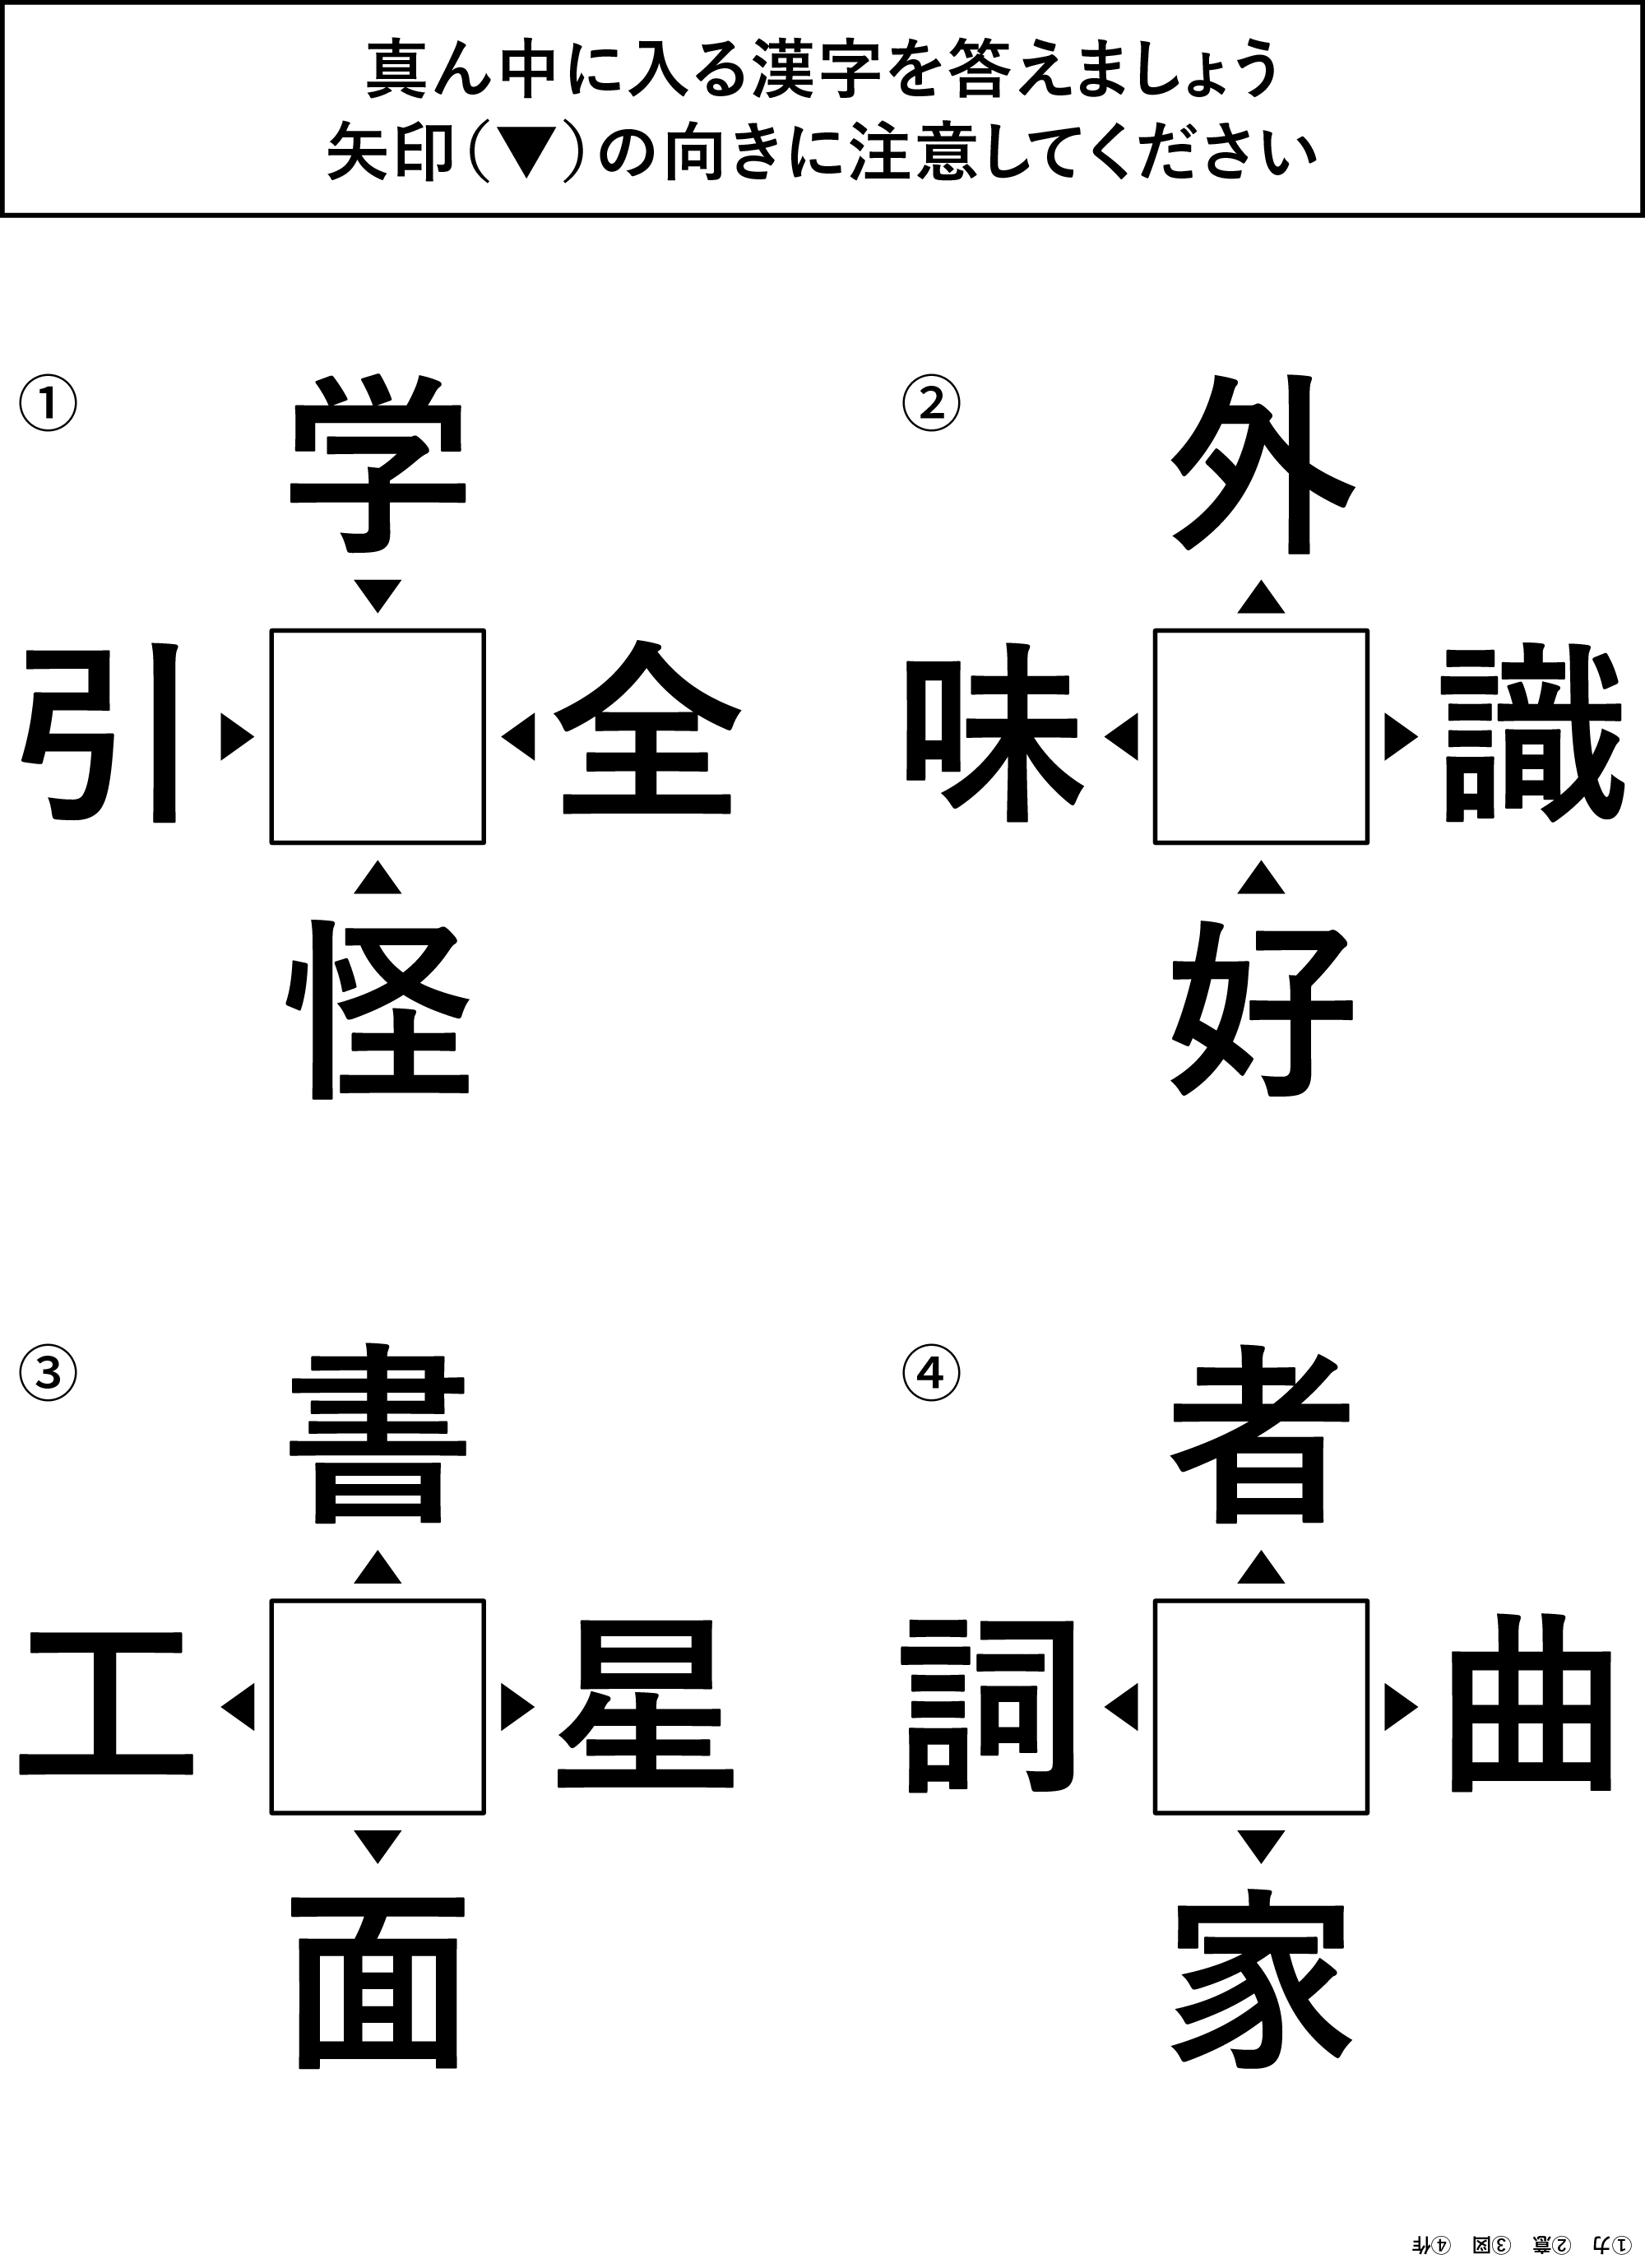 高齢者レク素材 共通する漢字クイズ クイズ 介護レク広場 レク素材やレクネタ 企画書 の無料ダウンロード